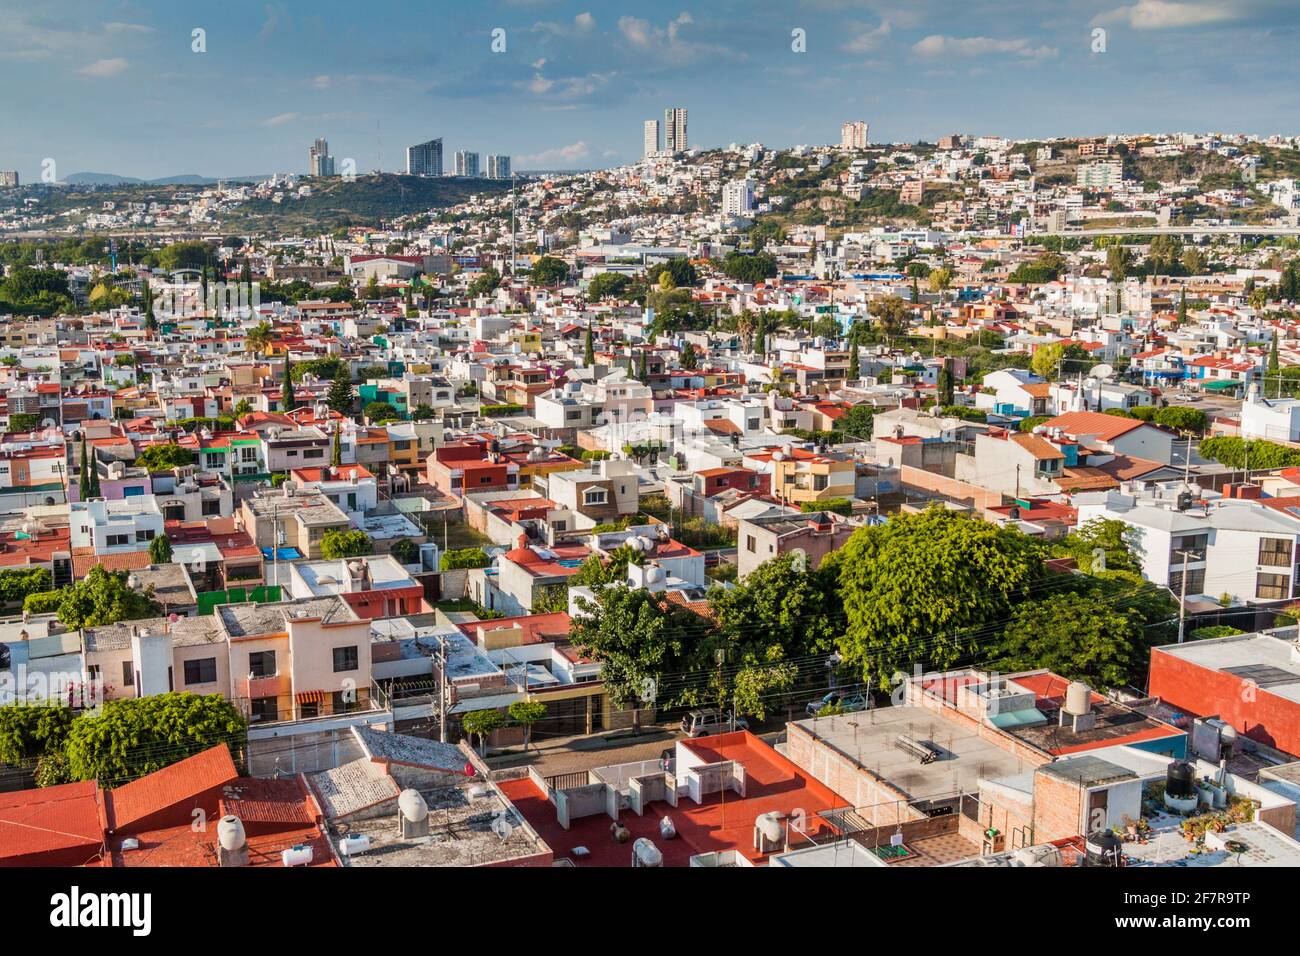 Vue aérienne de la ville de Queretaro au Mexique Banque D'Images